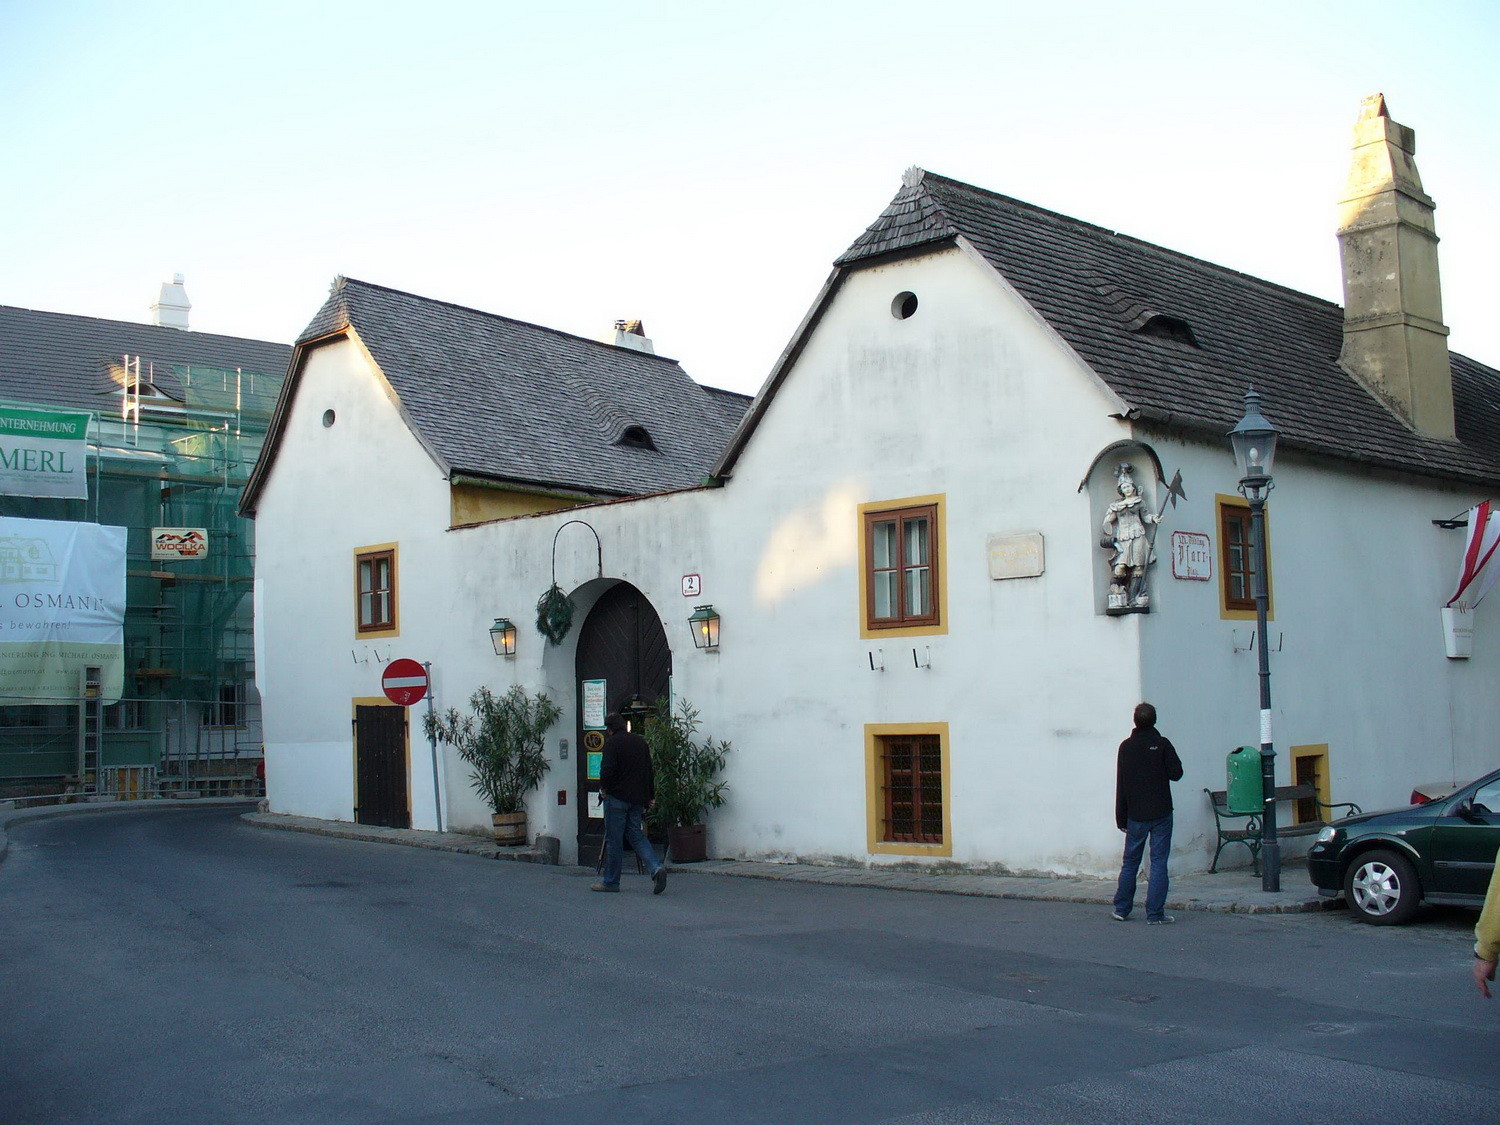 Beethofenhaus Meyer am Pfarrplatz